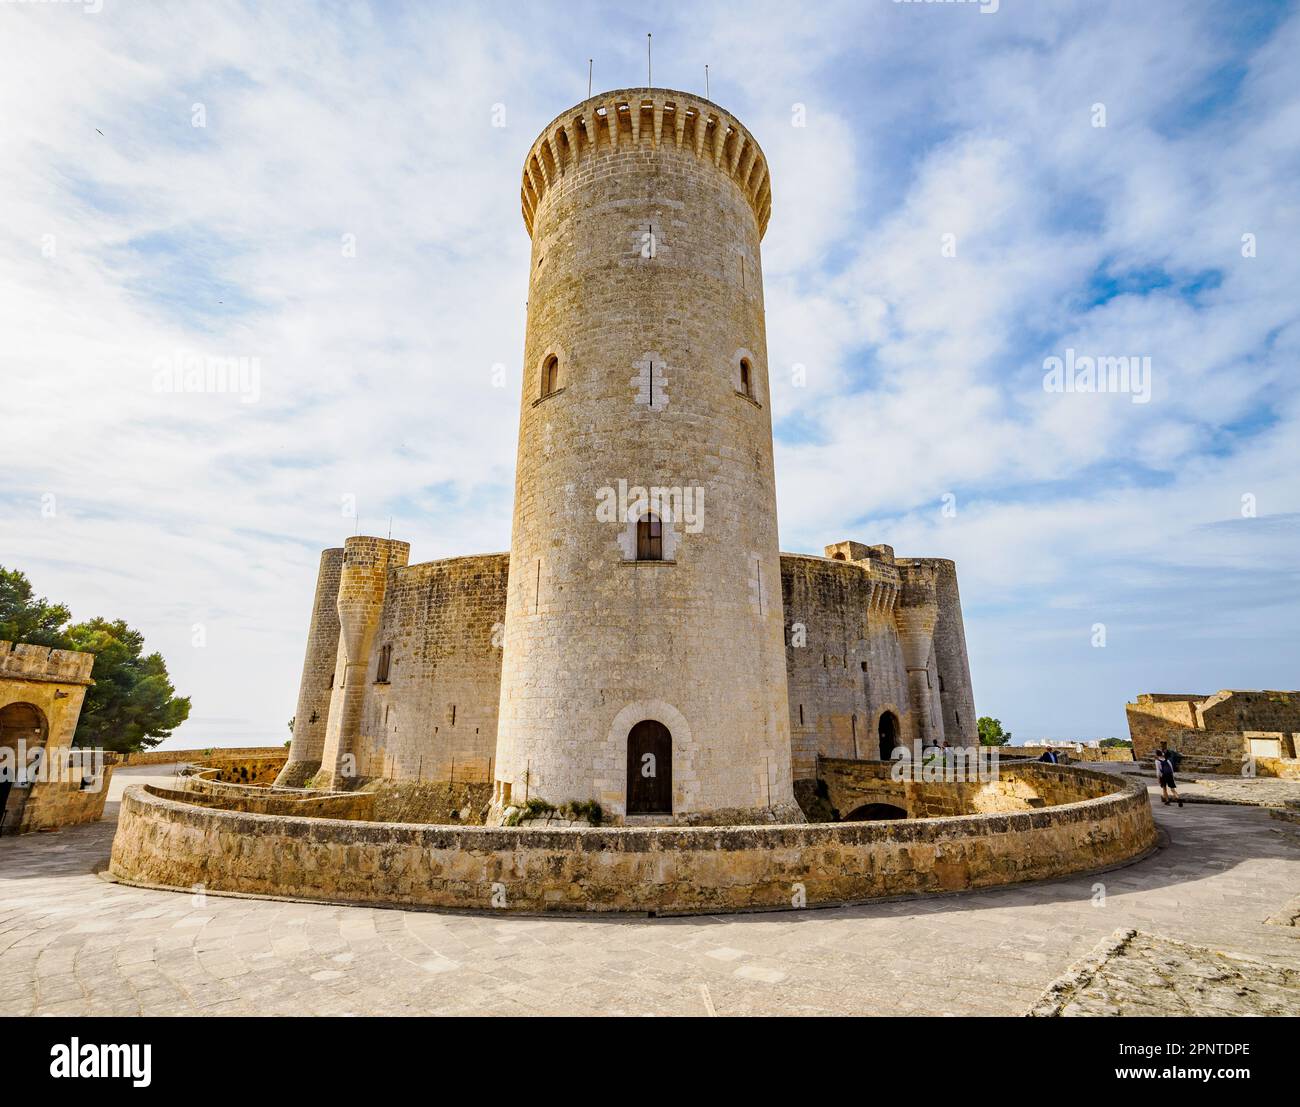 Donjon-Turm von Schloss Bellver das Castillo de Bellver hoch oben auf einem Hügel mit Blick auf Palma de Mallorca auf den Balearen Spaniens Stockfoto